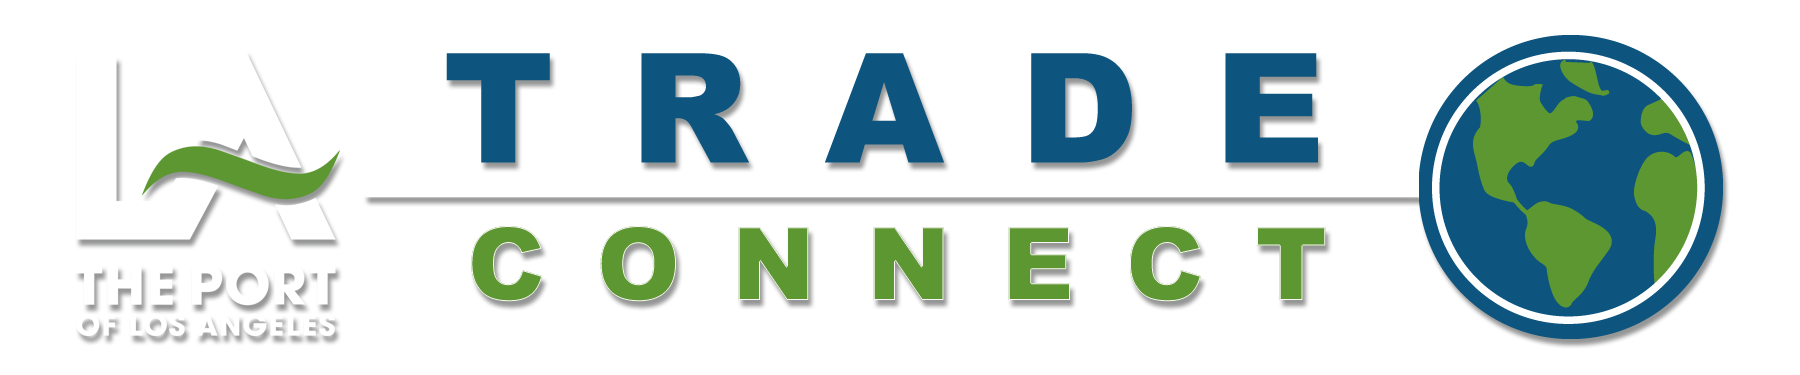 Trade Connect Logo